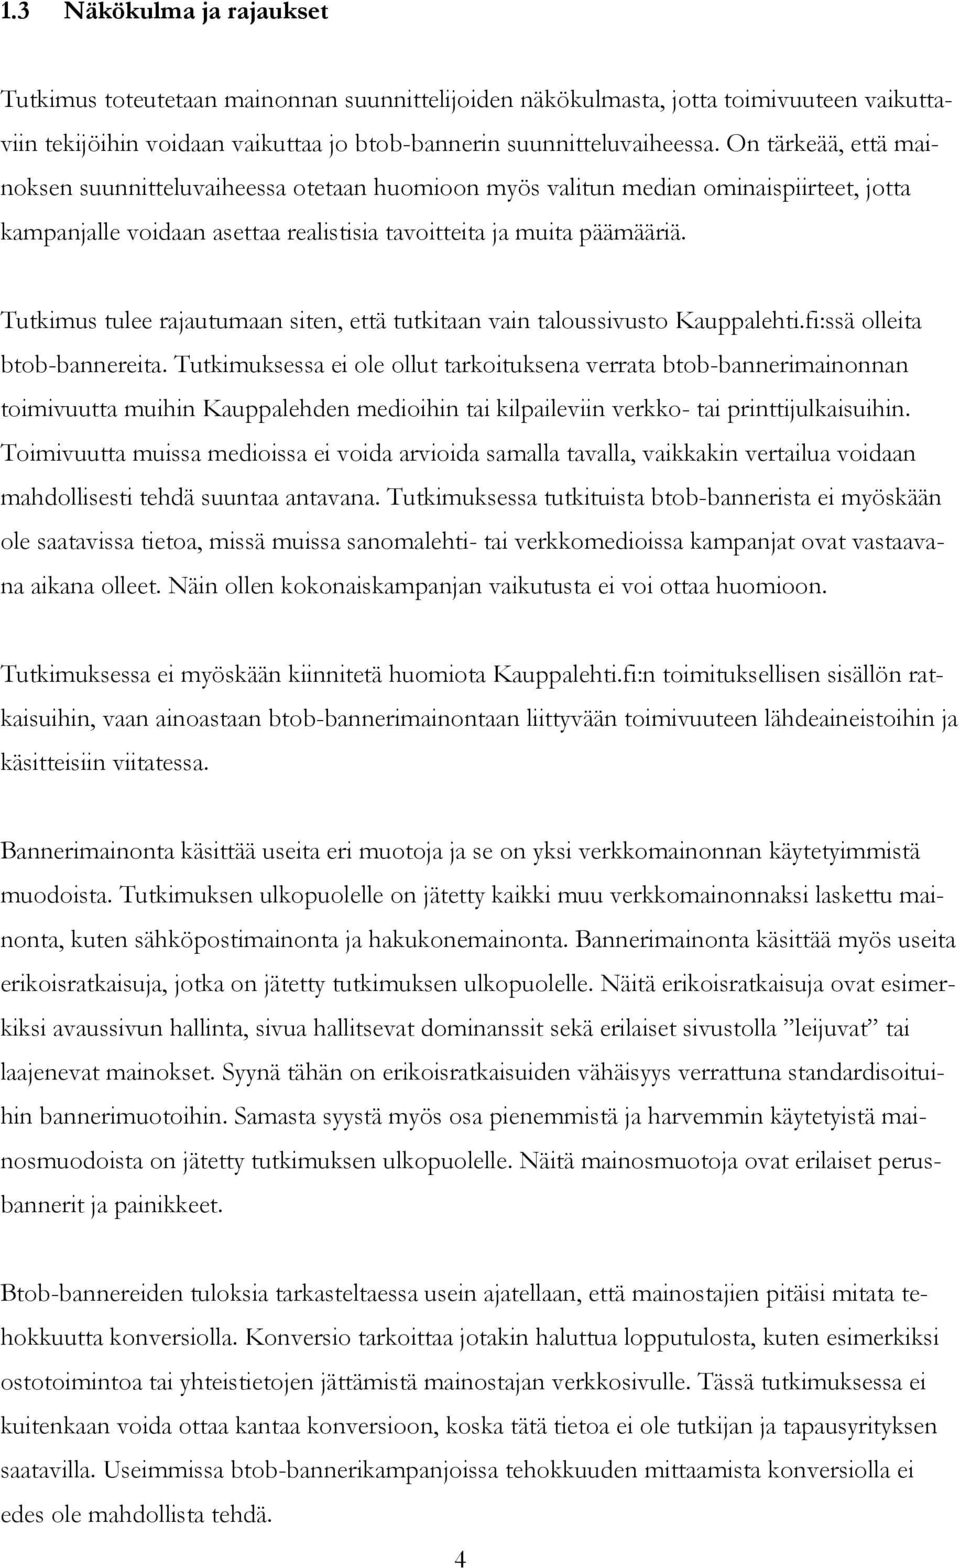 Tutkimus tulee rajautumaan siten, että tutkitaan vain taloussivusto Kauppalehti.fi:ssä olleita btob-bannereita.